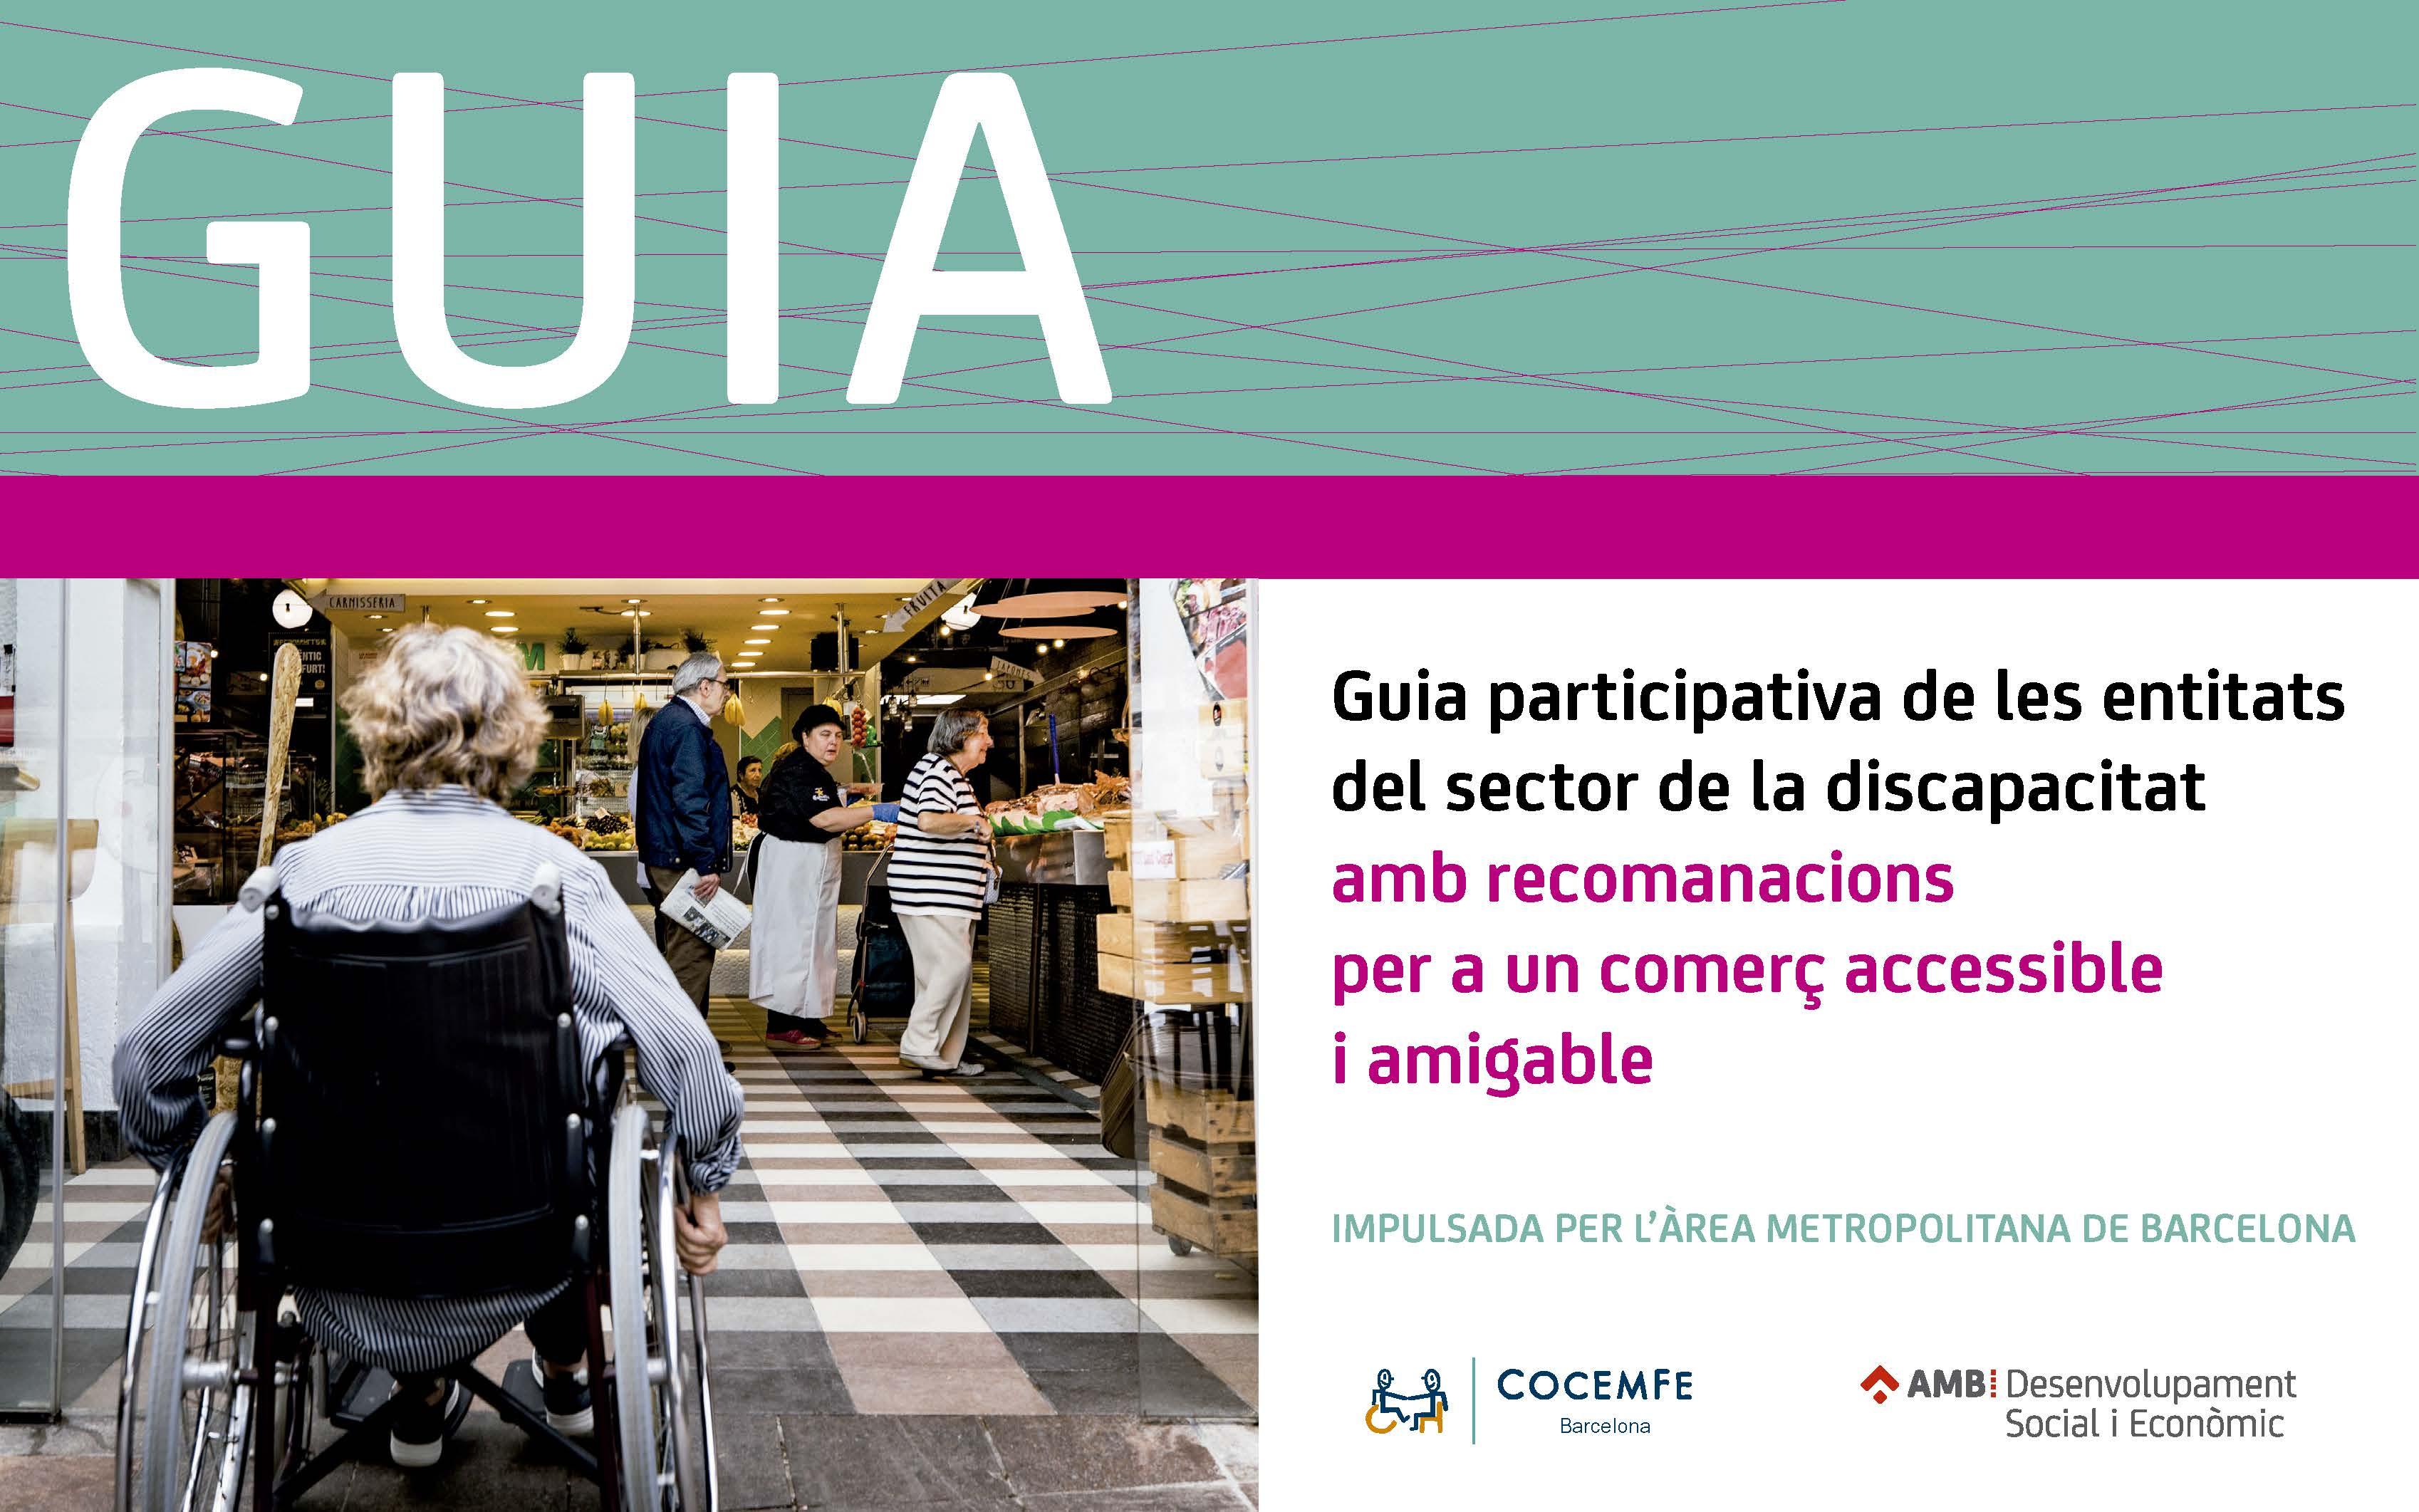 Imagen de la portada de la Guía participatica de las entidades del sector de la discapacidad con recomendaciones para un comercio accesible y amigable